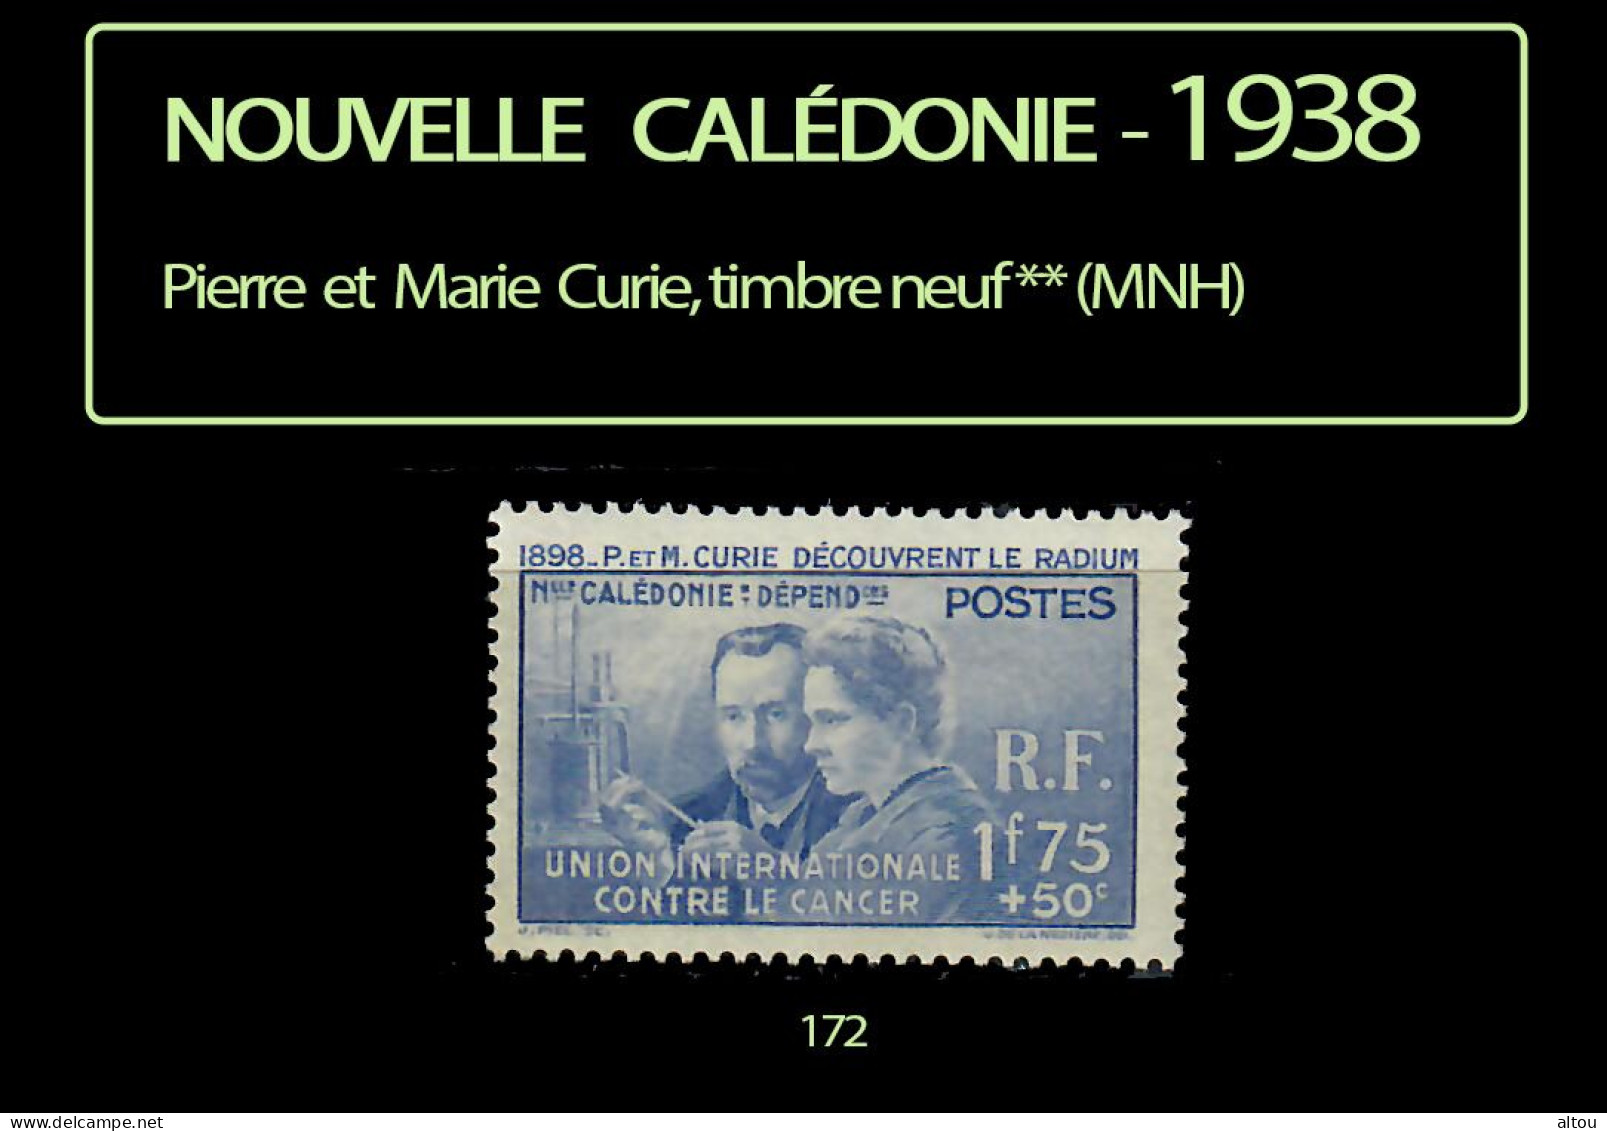 Nouvelle Calédonie 1938 - Pierre Et Marie Curie - Timbre Neuf ** (MNH) - Nuevos